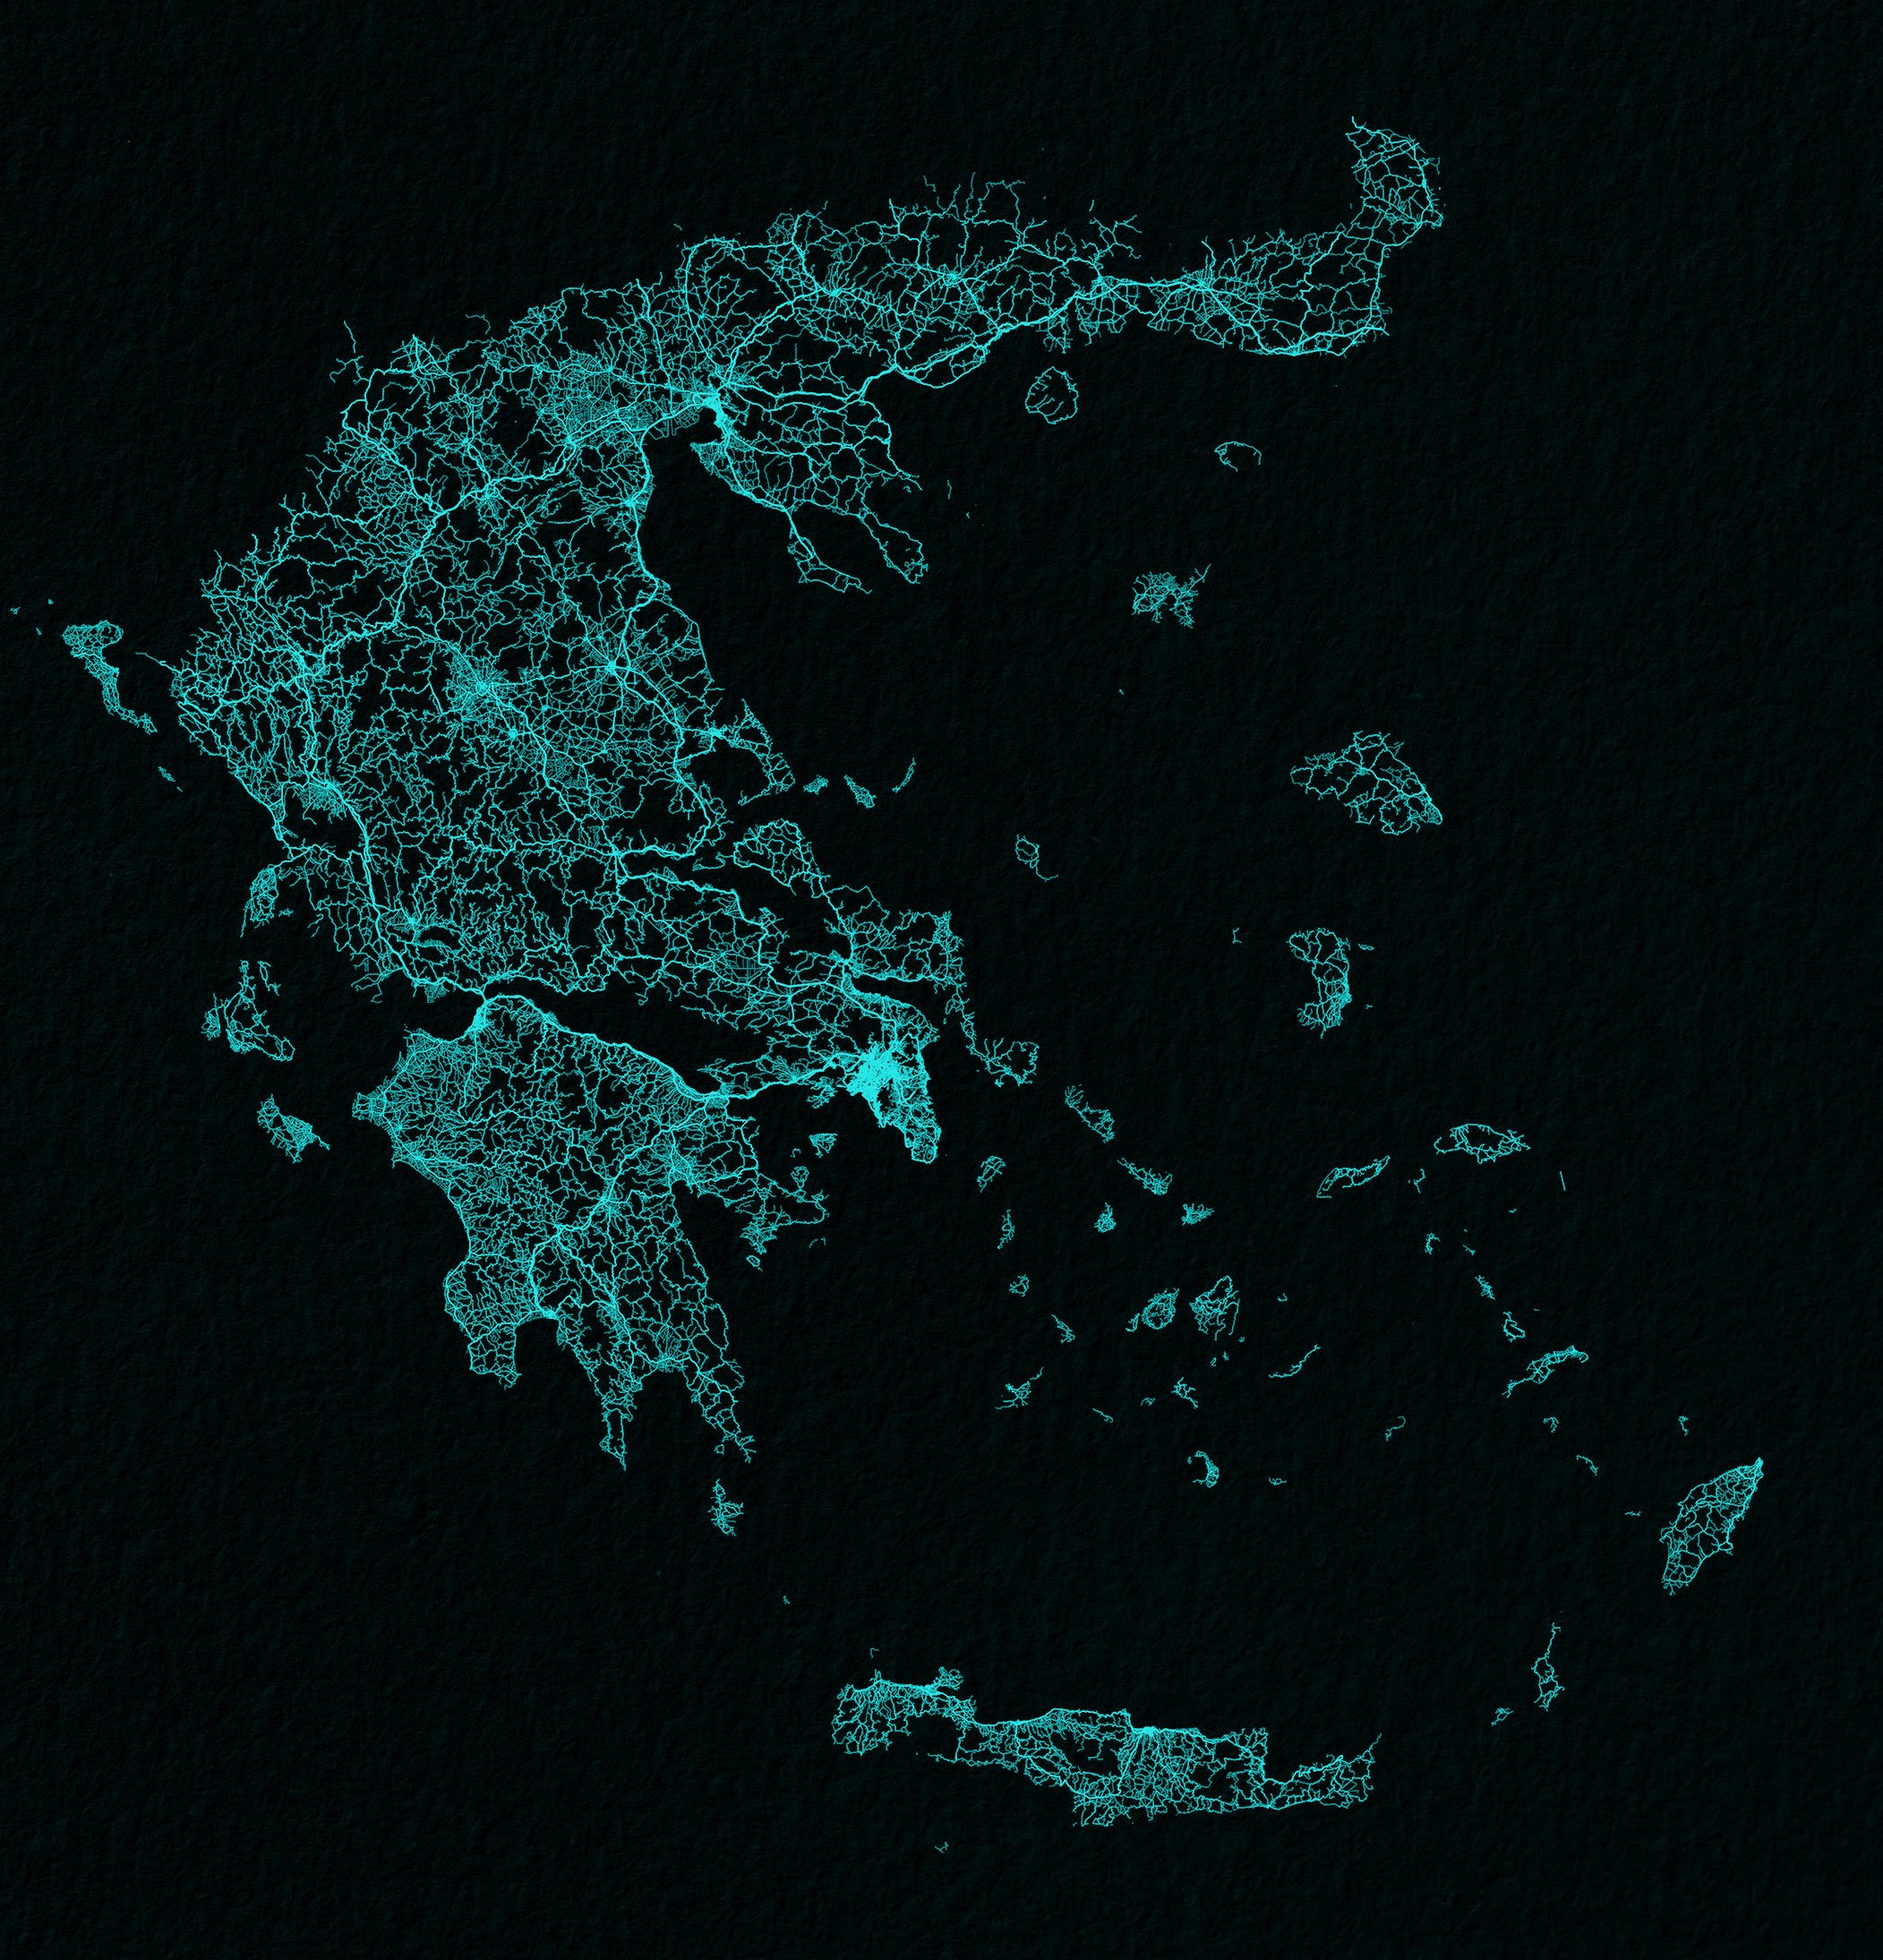 карта греции фото